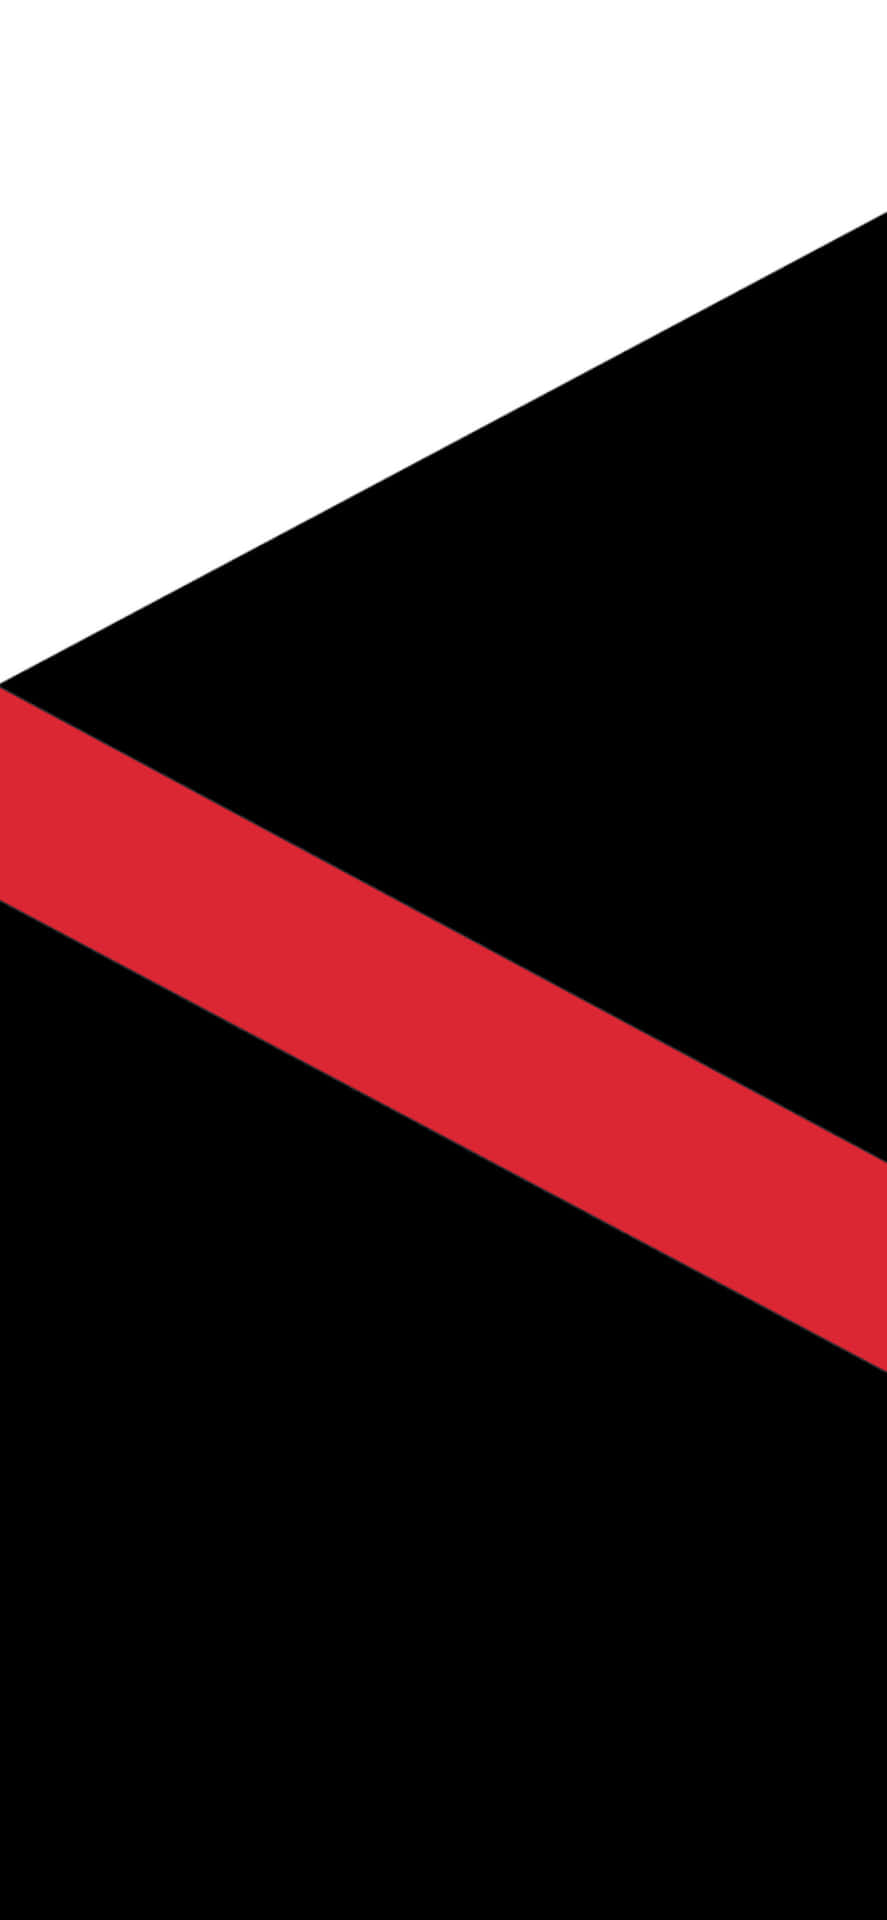 Umdesign Abstrato Único Em Vermelho, Preto E Branco. Papel de Parede